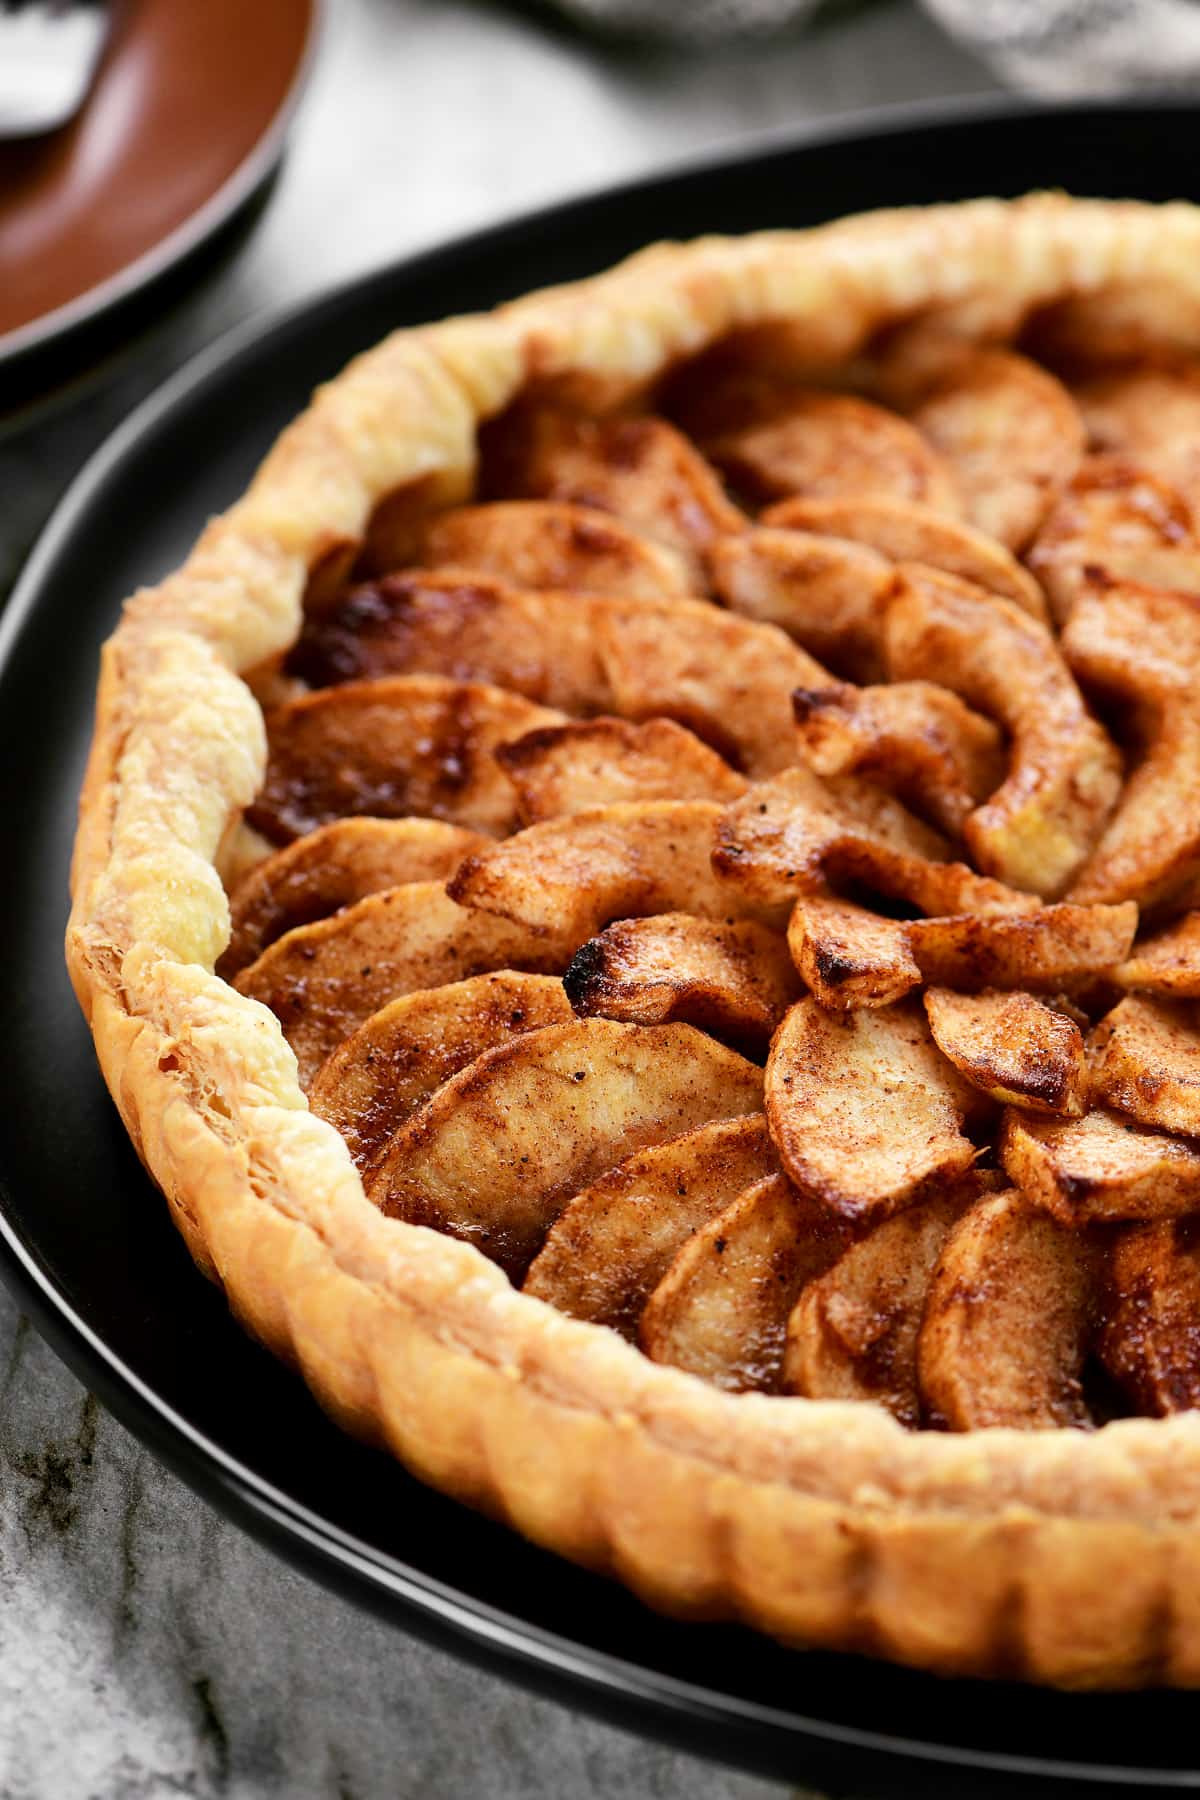 Apple tart on puff pastry.